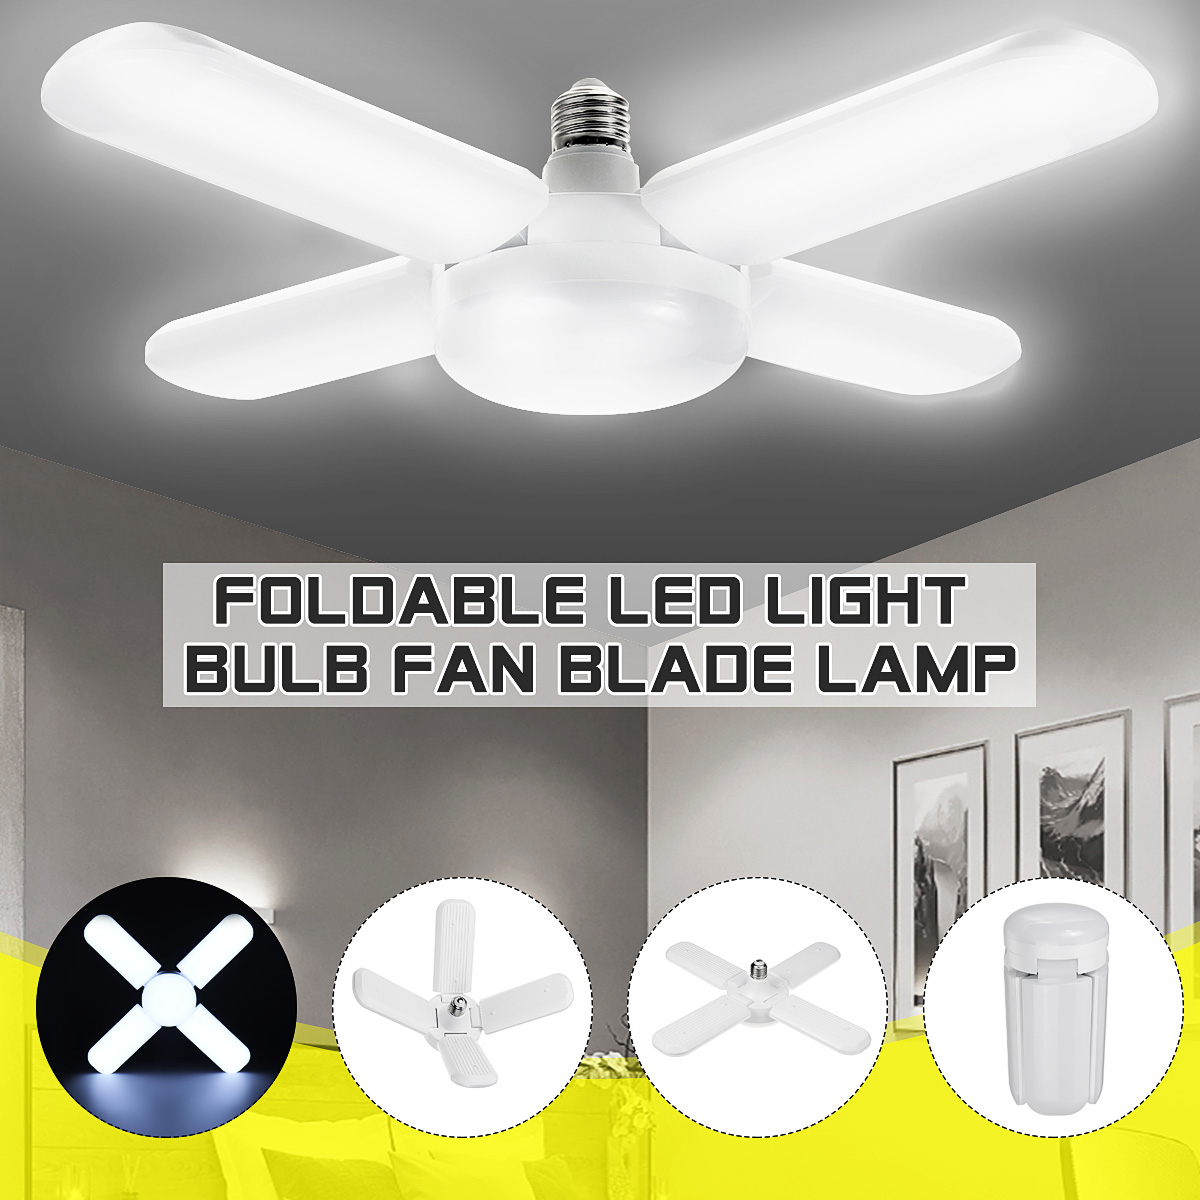 134-blade-E27-LED-Light-Bulb-Foldable-Fan-Blade-Light-Deformable-Ceiling-Lamp-Home-Living-Room-Inter-1861740-6